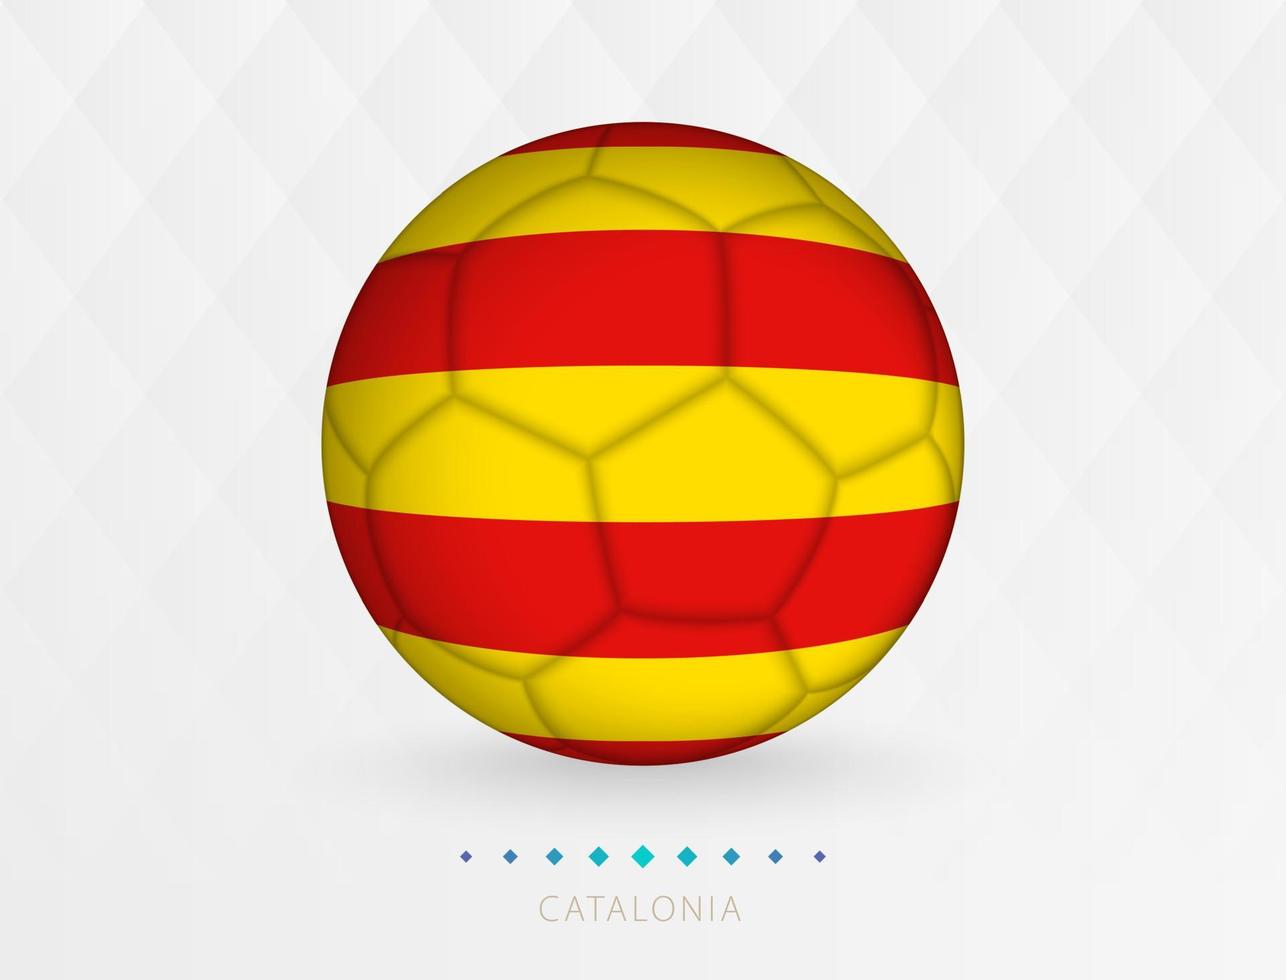 Amerikaans voetbal bal met Catalonië vlag patroon, voetbal bal met vlag van Catalonië nationaal team. vector